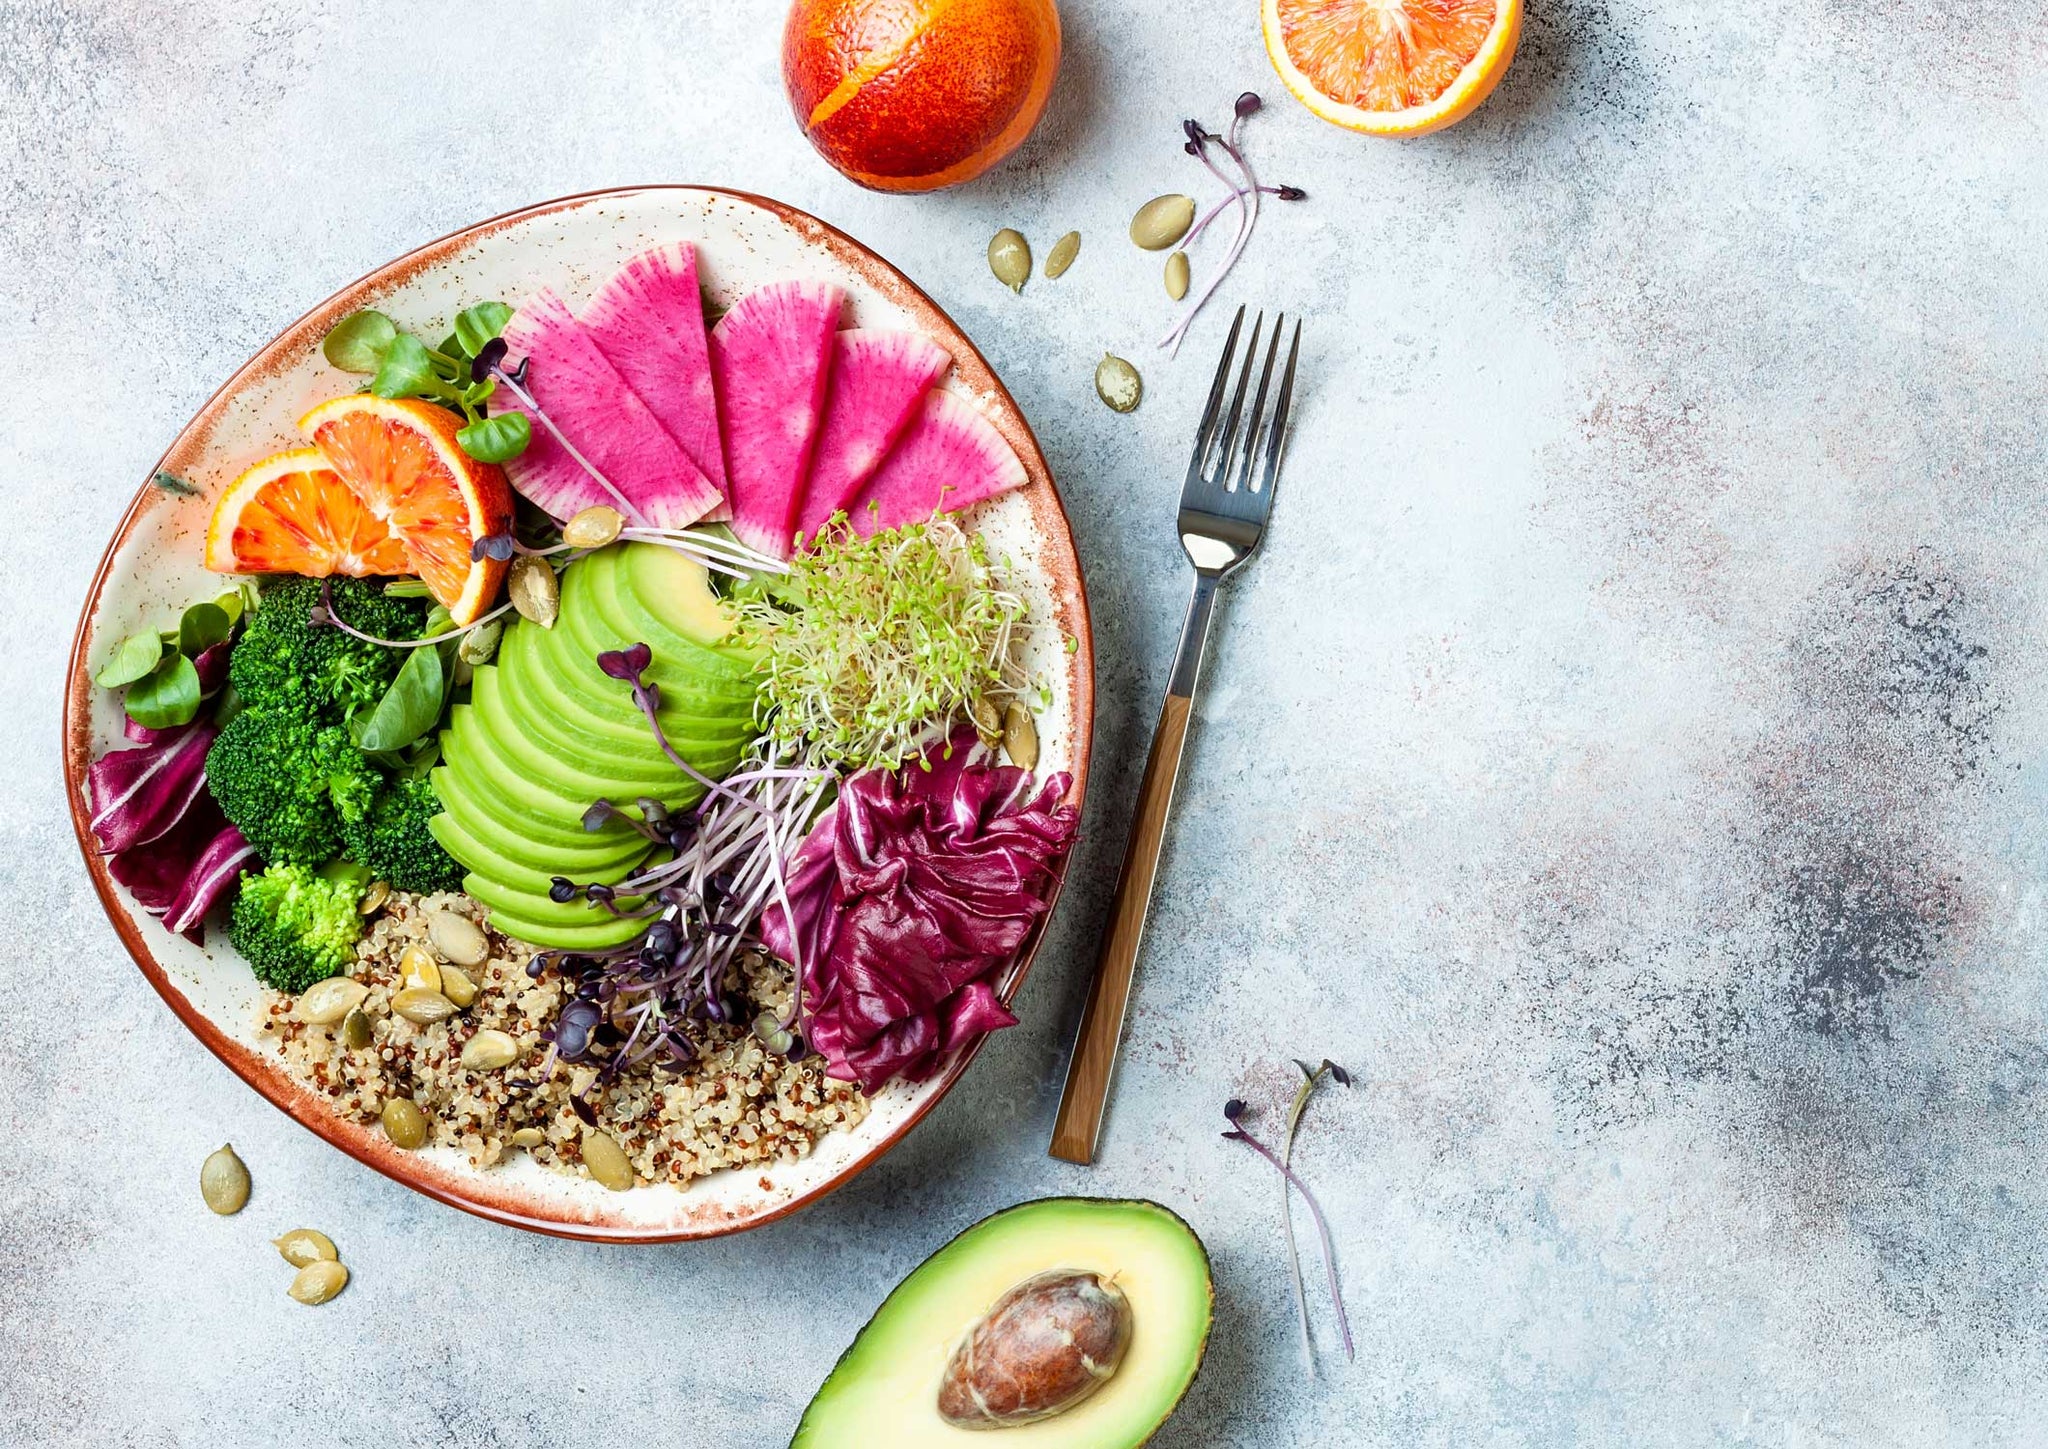 bowl of quinoa, avocado, fruits and vegetables